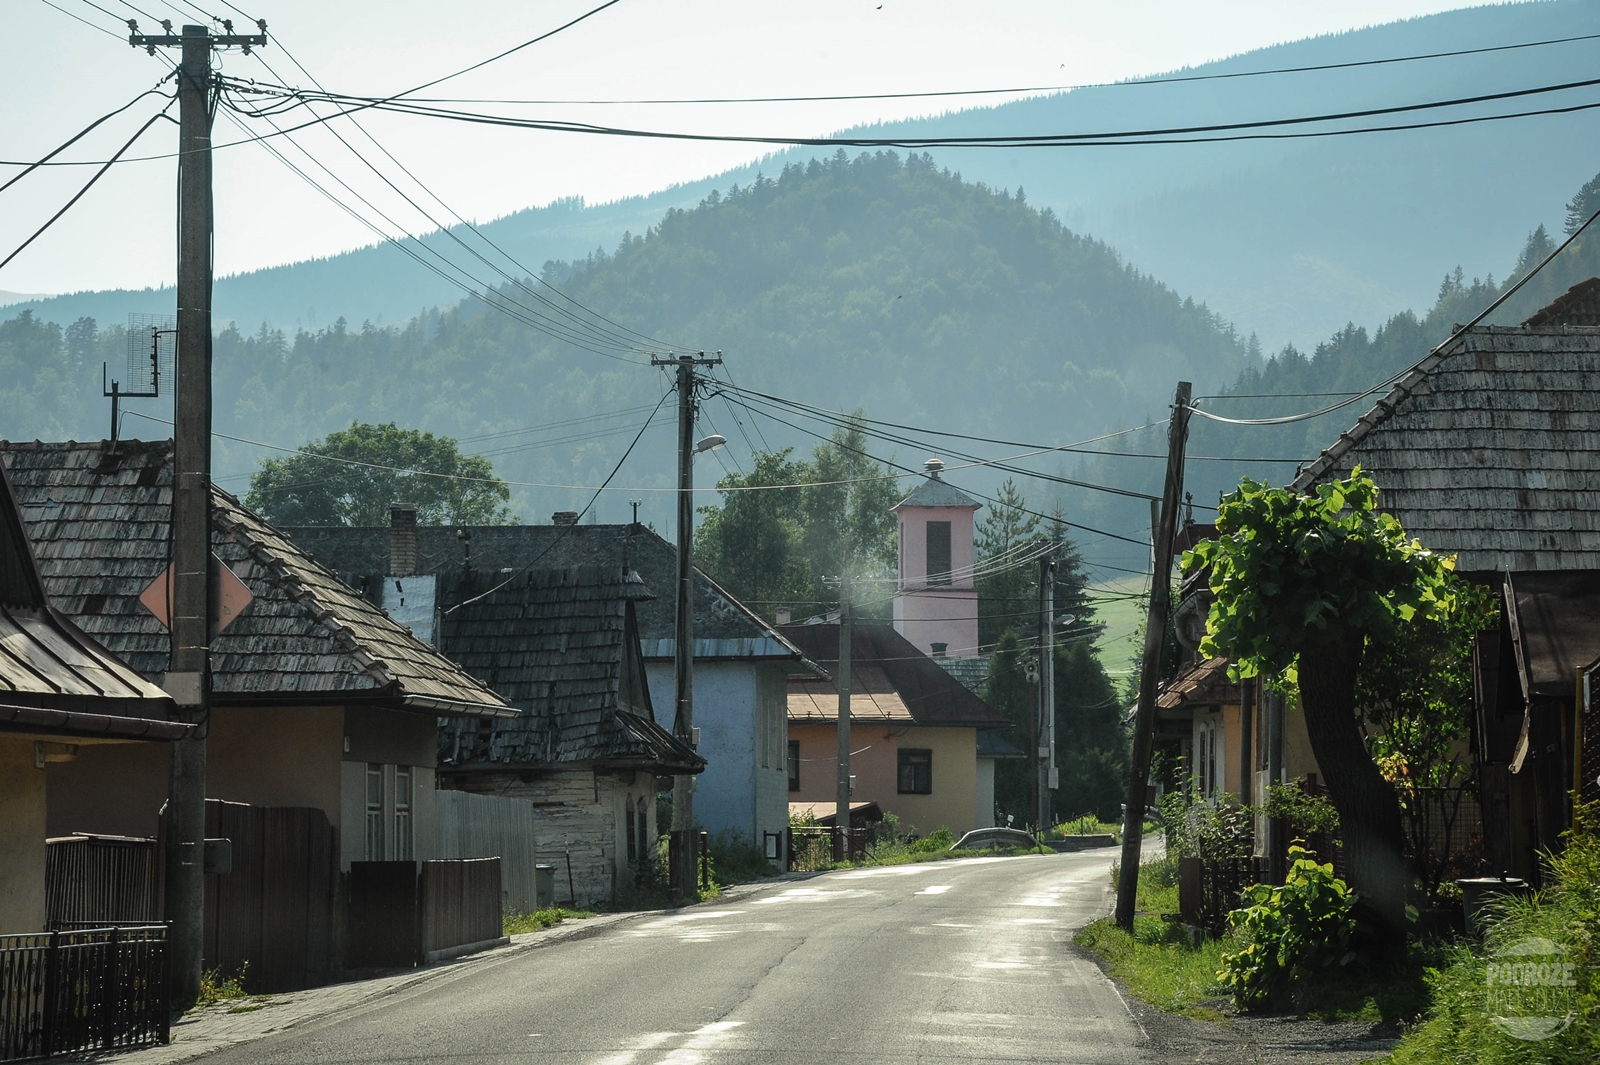 romska wieś Słowacja